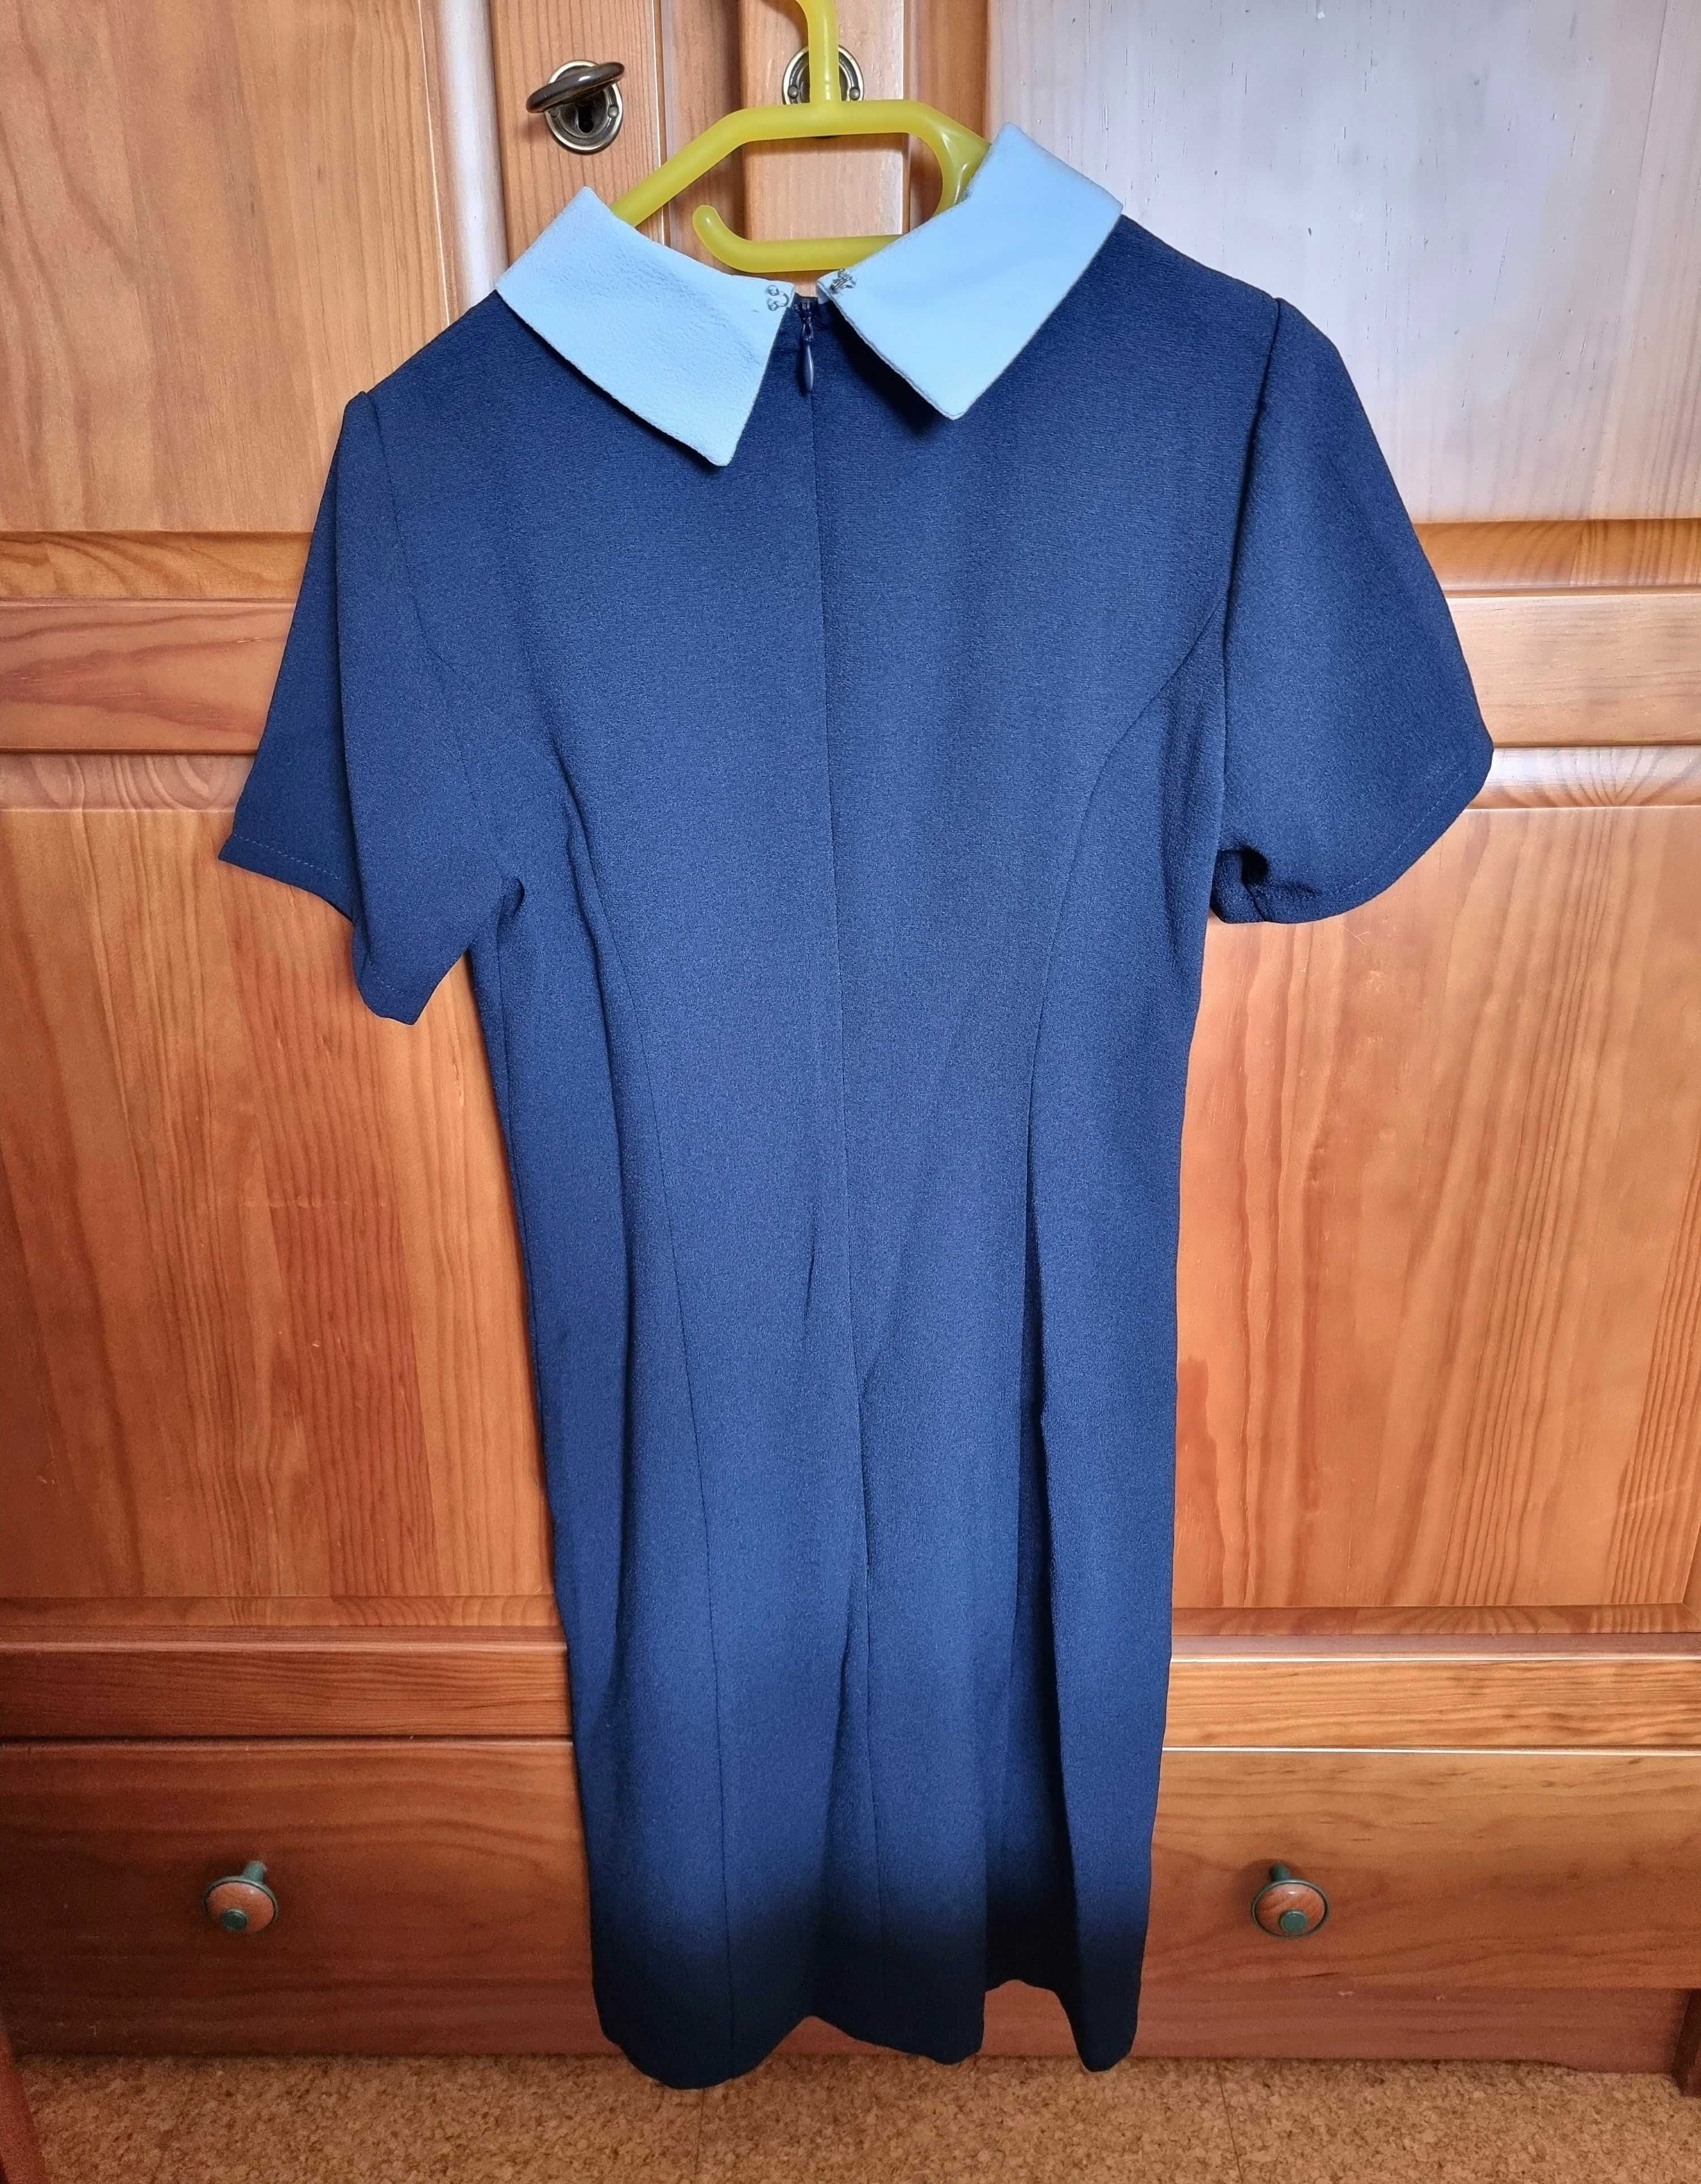 Vestido azul escuro curto Primark, tamanho 34 - novo